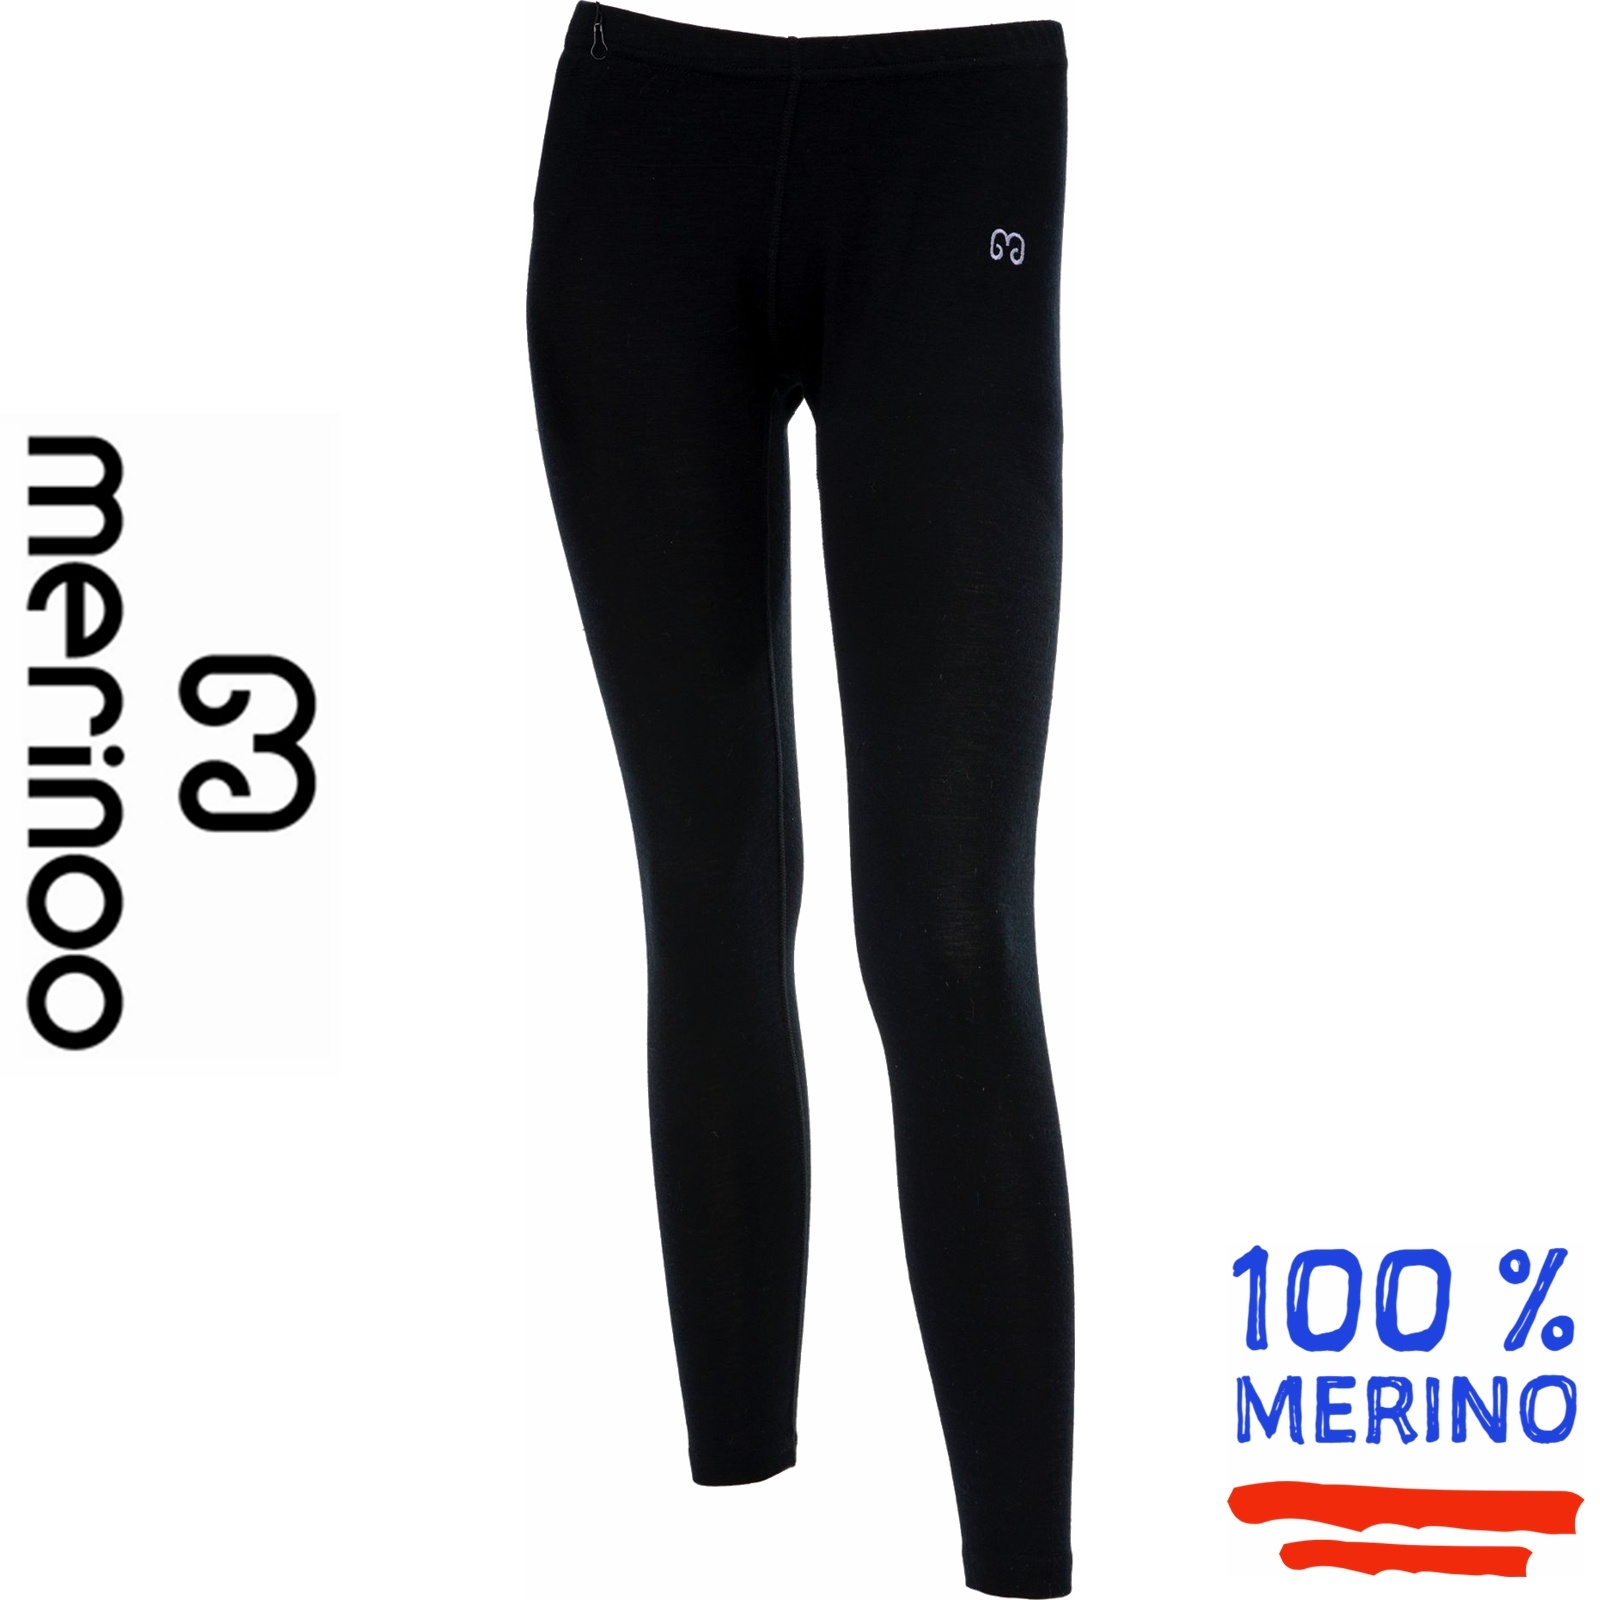 Merinoo (100% merinowol) Merinoo | 200 | Dames thermobroek